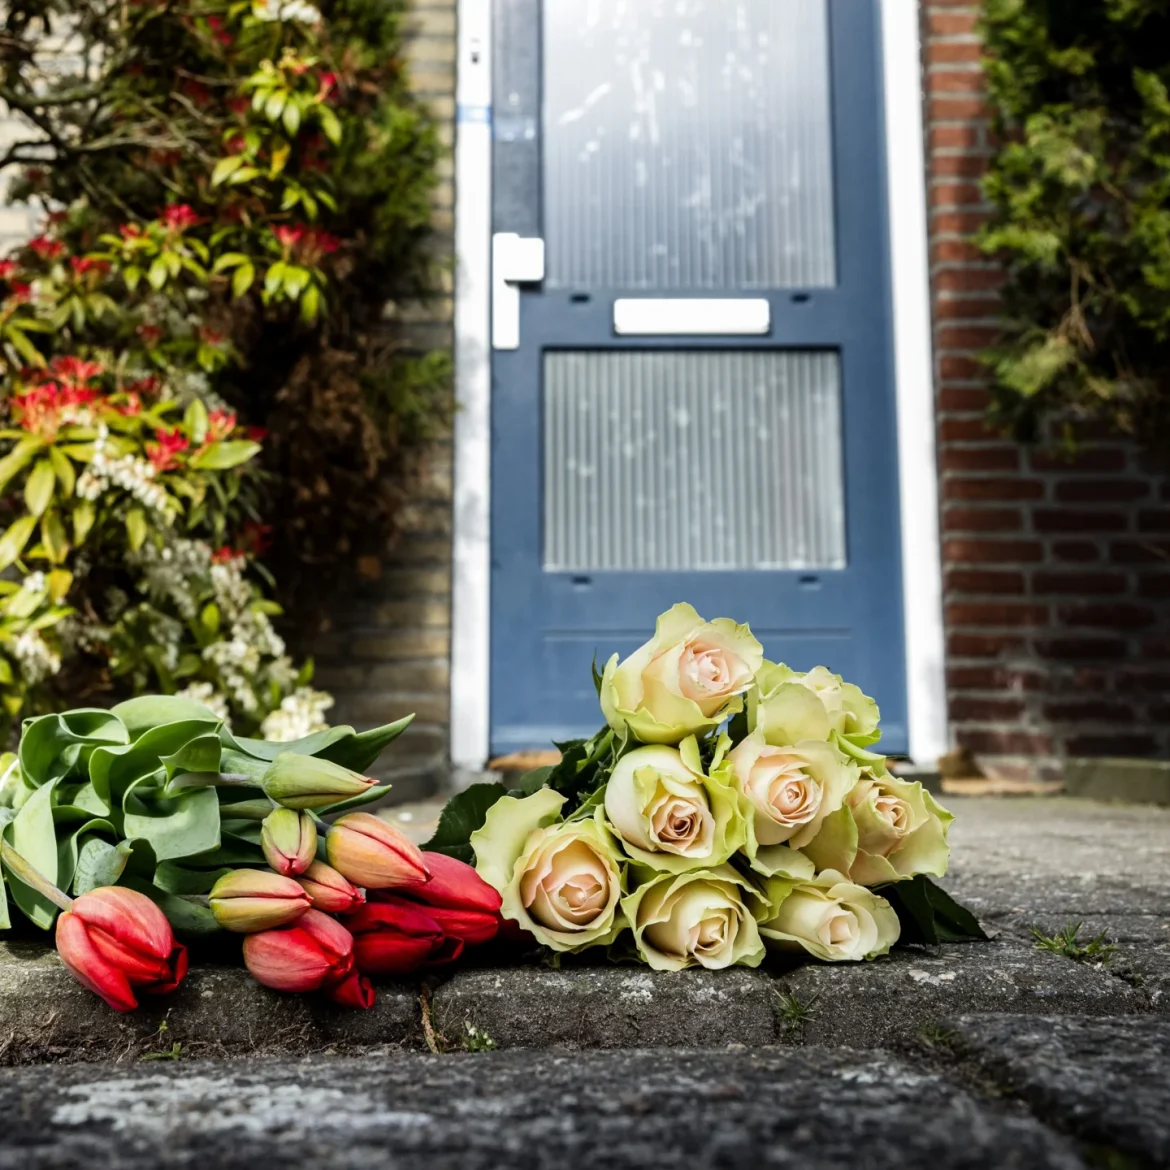 Bloemen bij het huis in Mierlo waar een vrouw werd doodgestoken